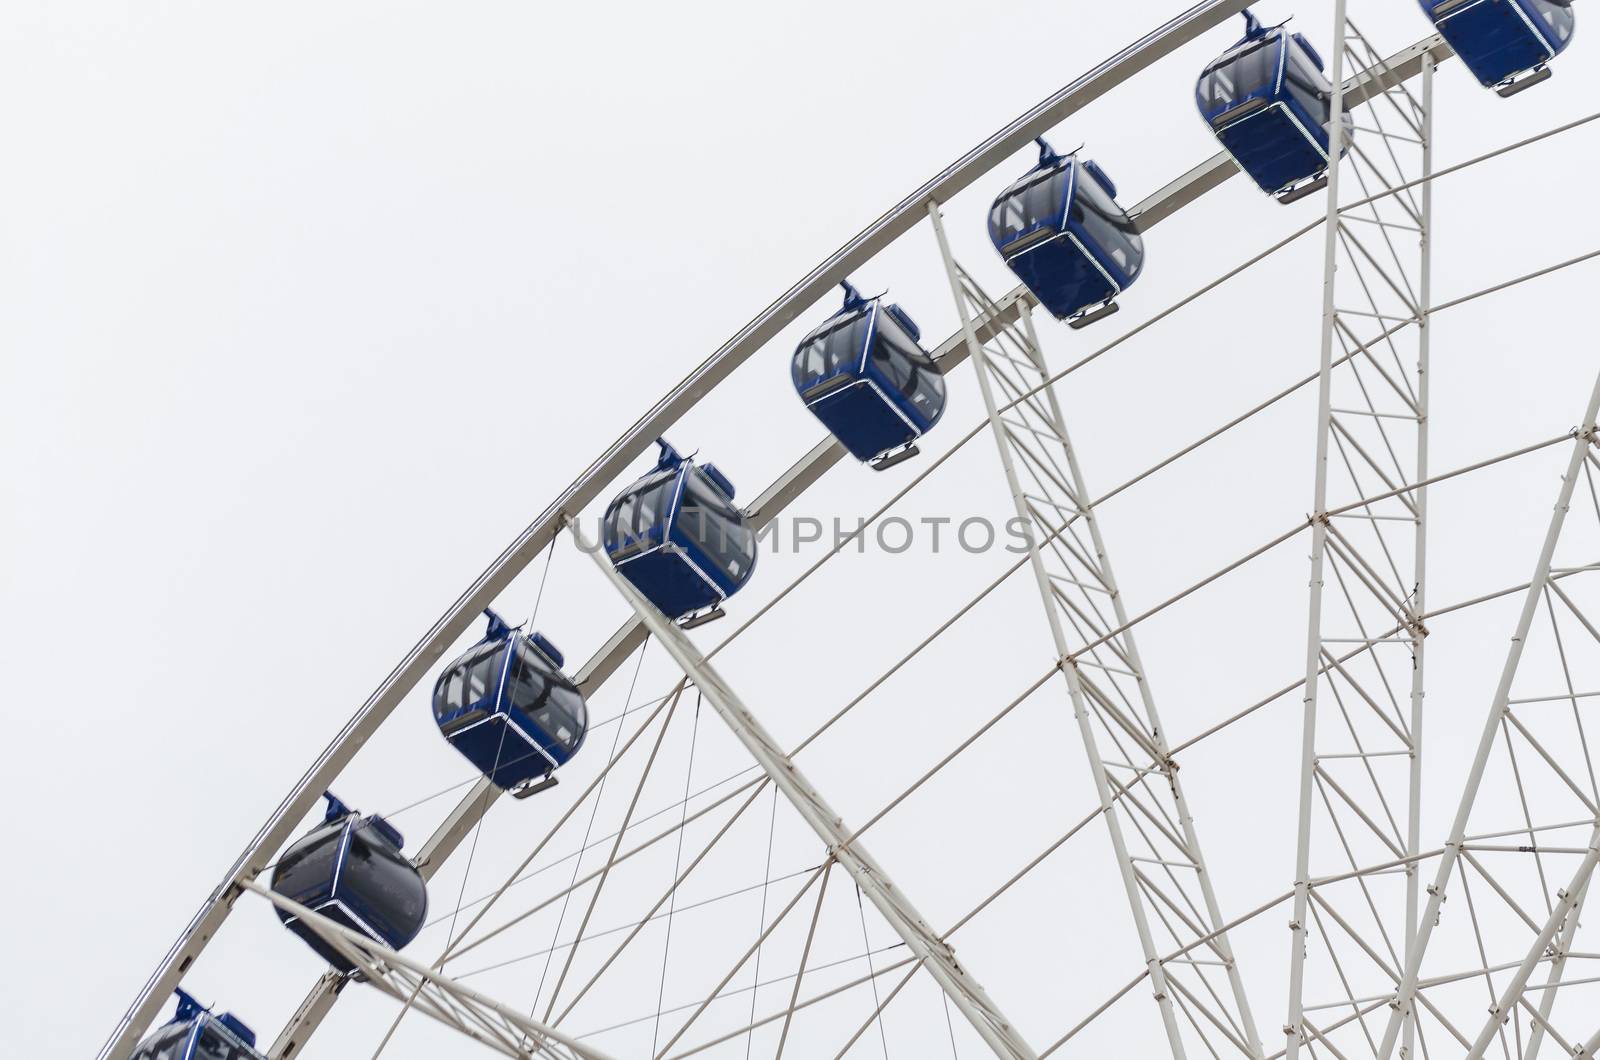  Ferris wheel                  by JFsPic